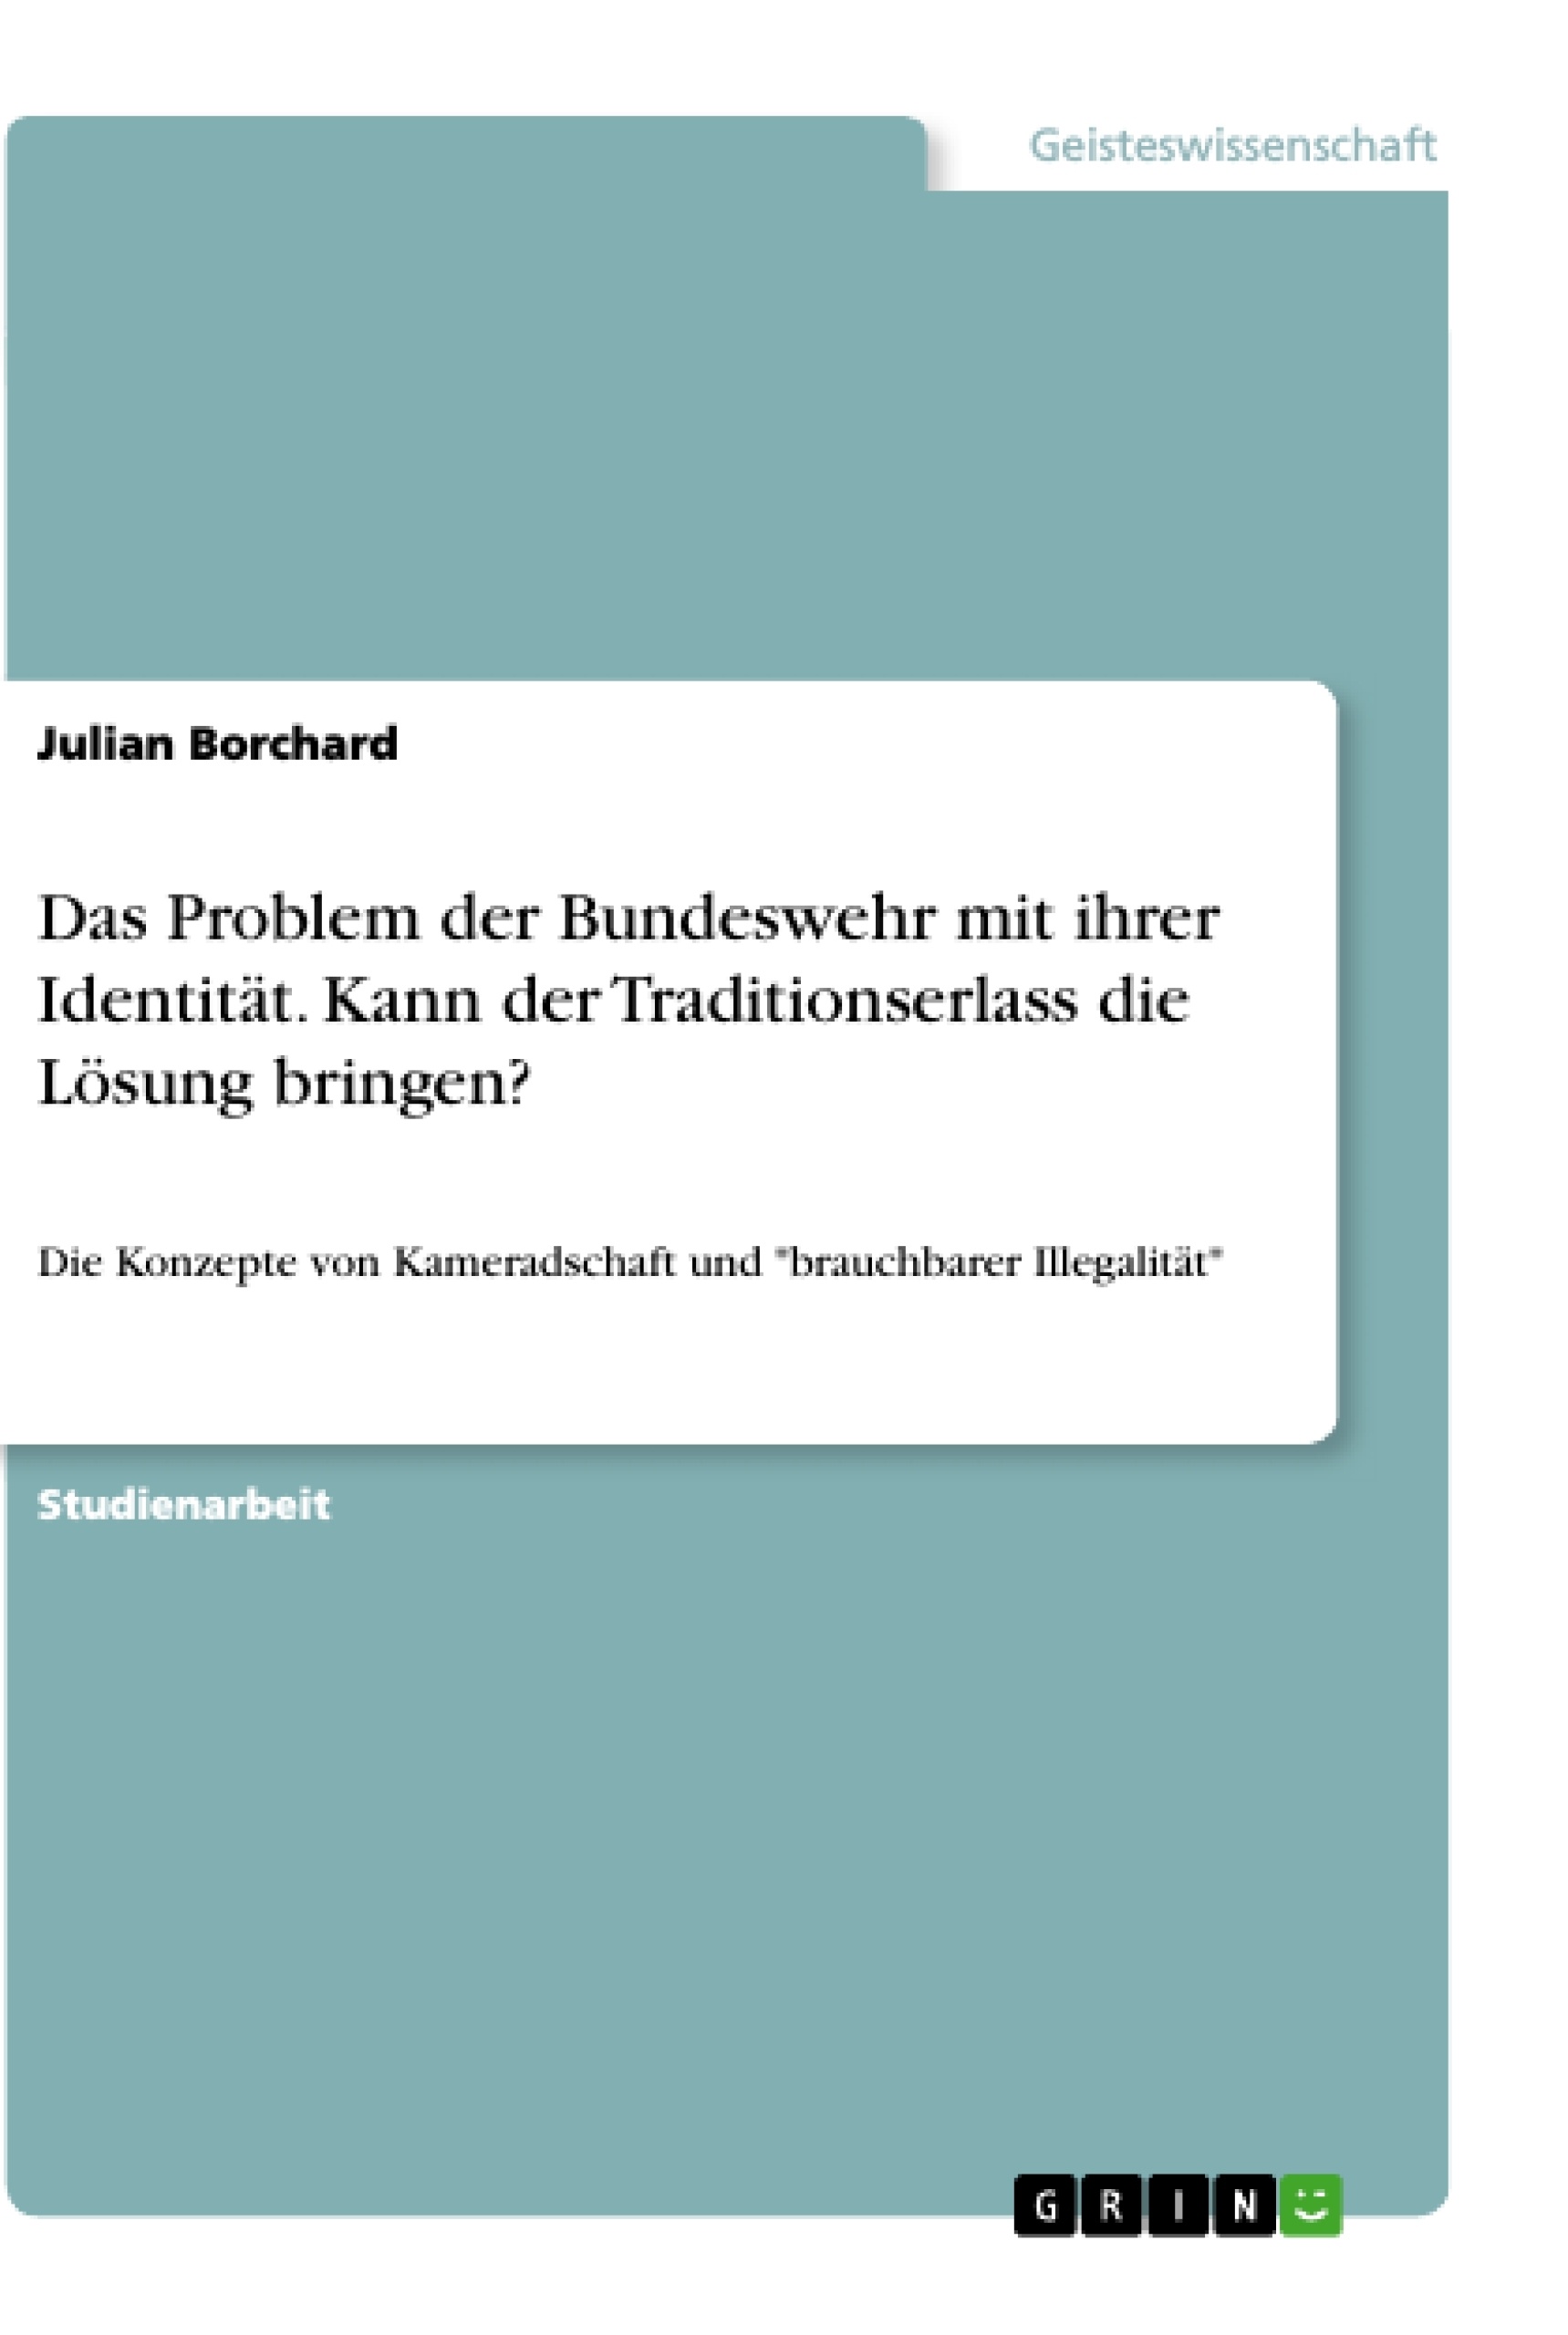 Título: Das Problem der Bundeswehr mit ihrer Identität. Kann der Traditionserlass die Lösung bringen?